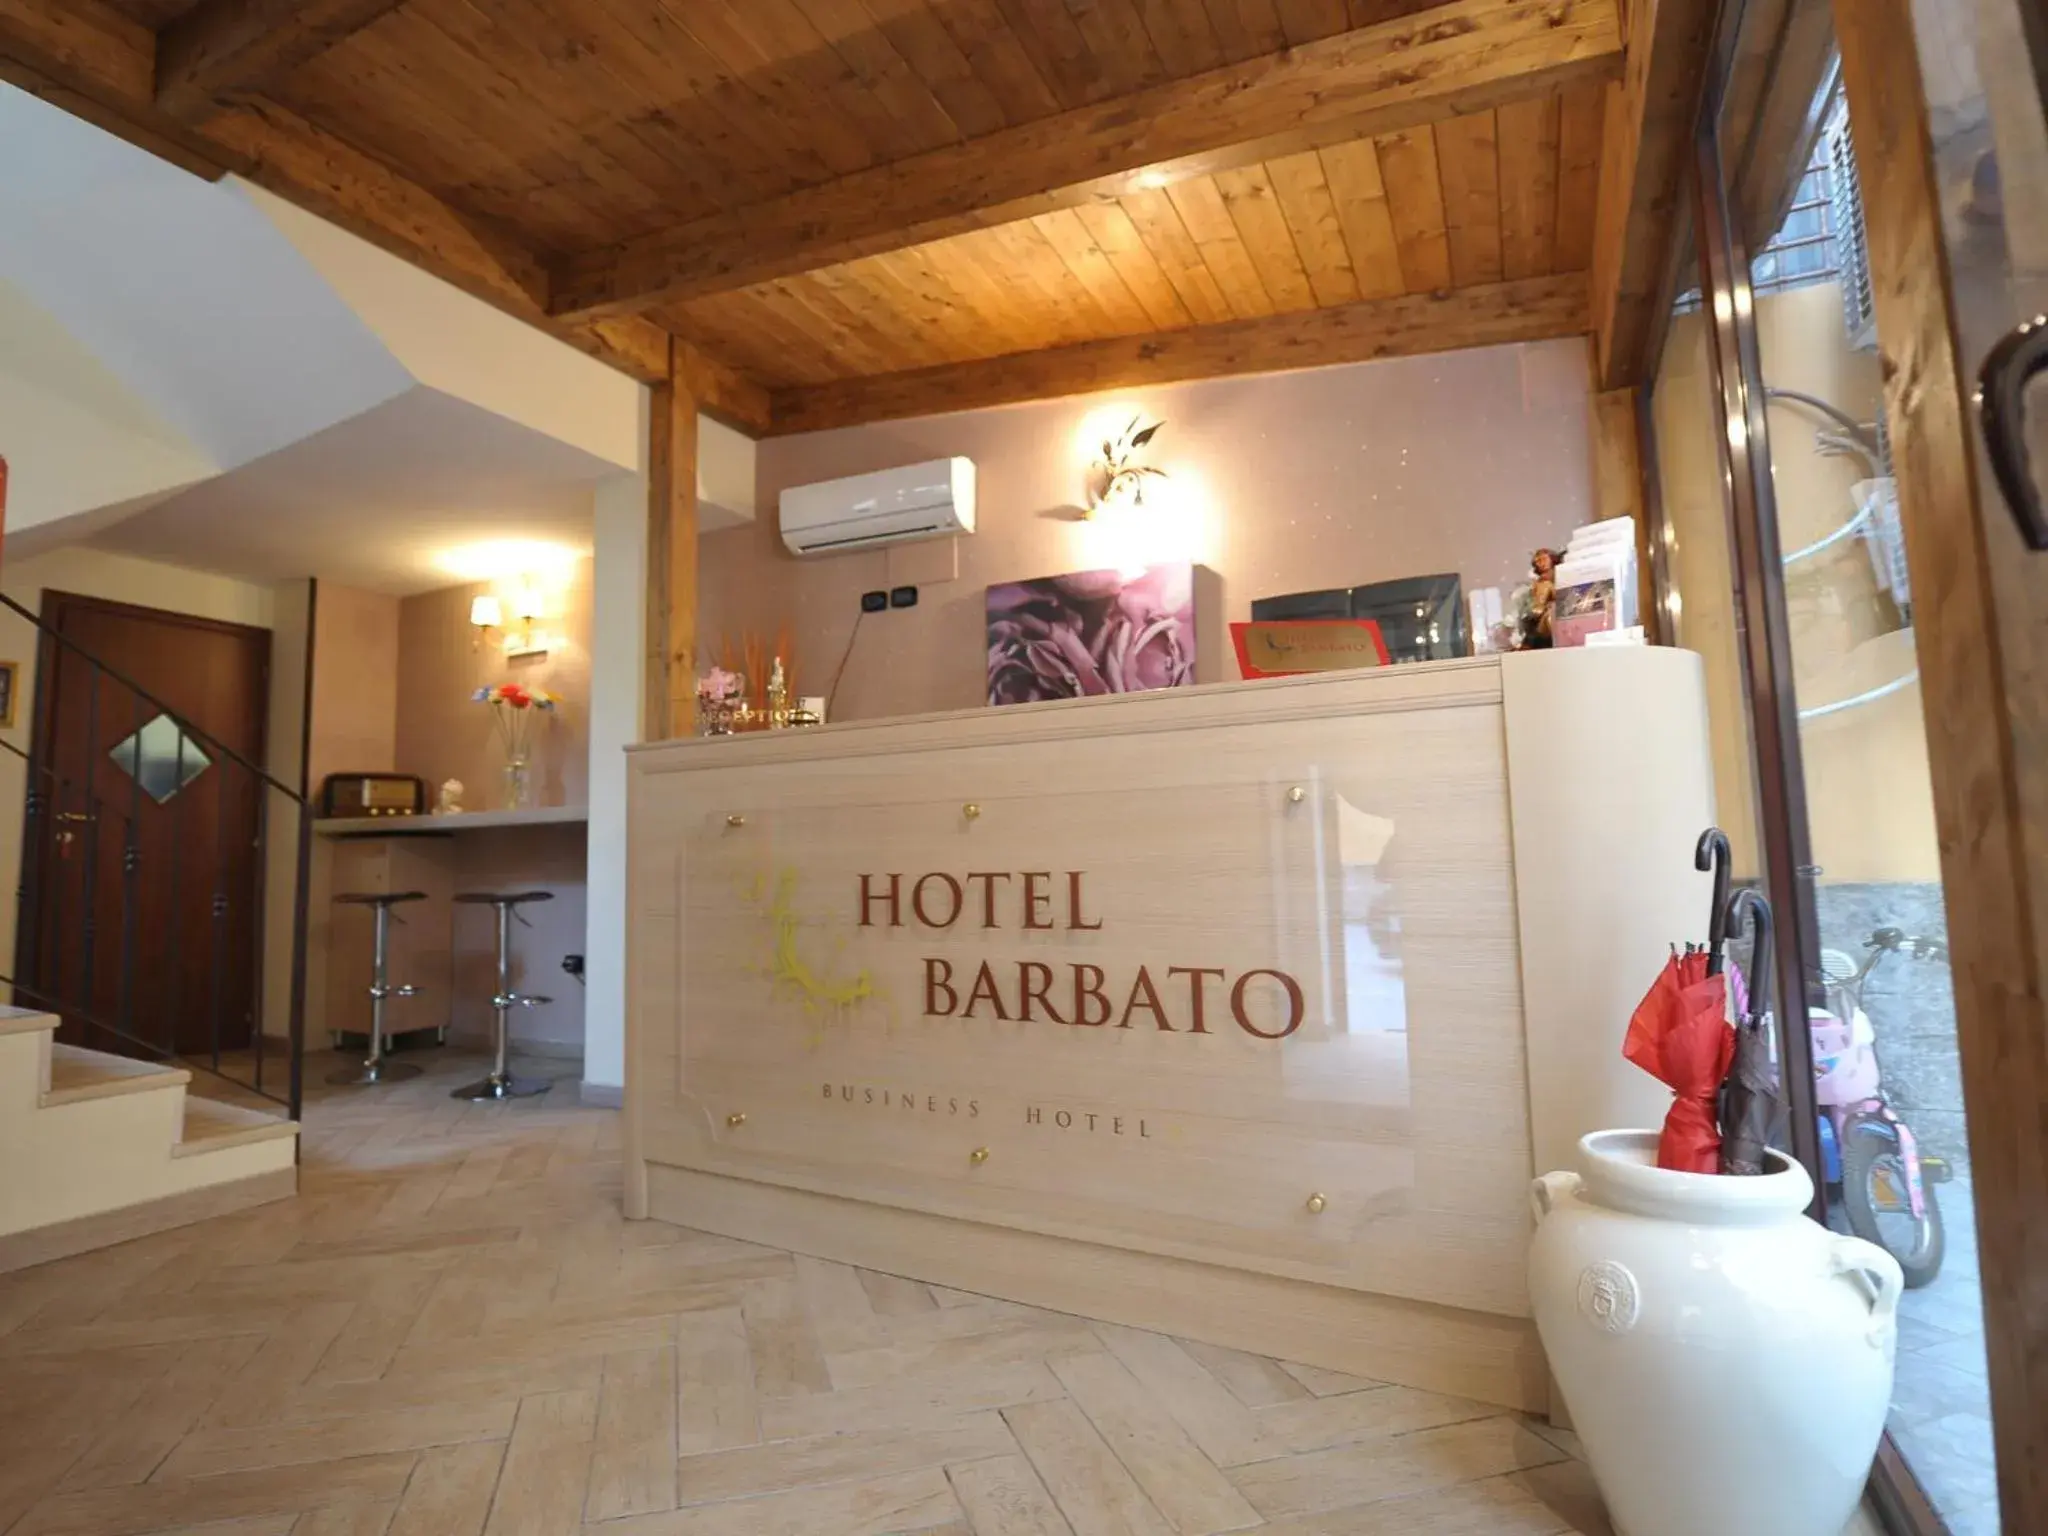 Lobby or reception in Hotel Barbato